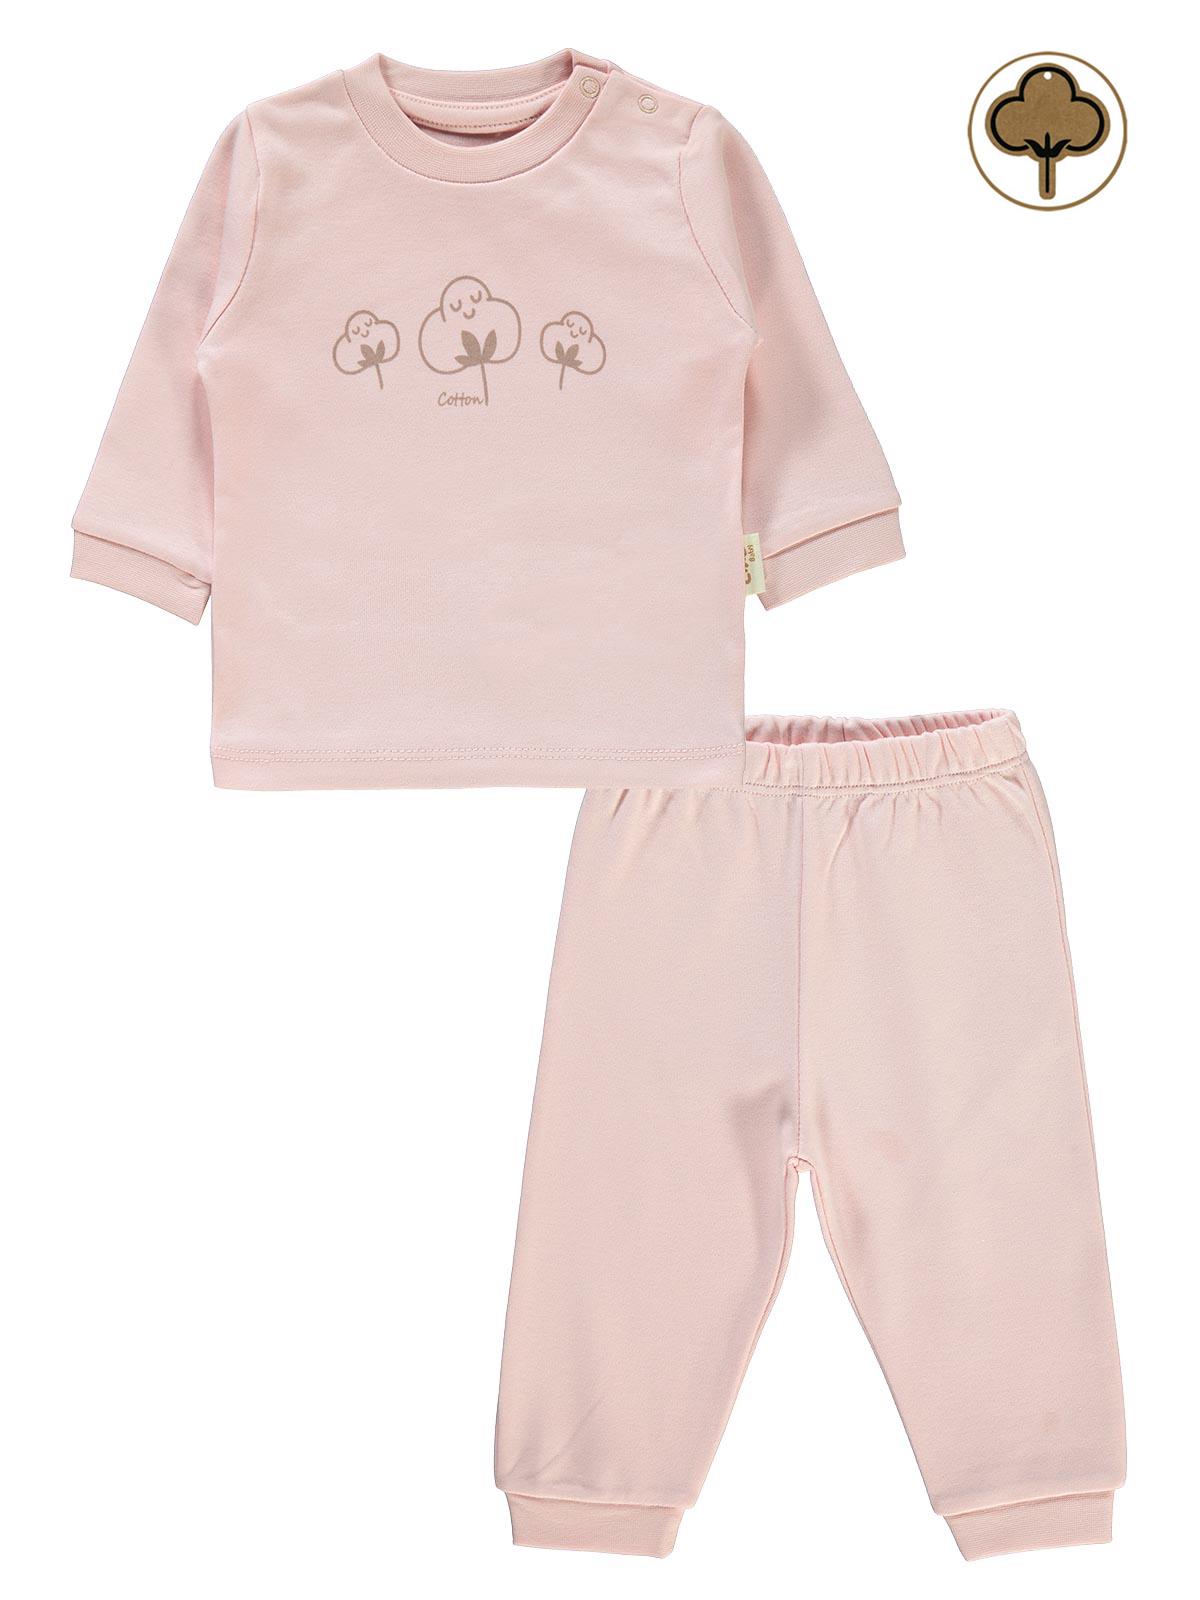 Civil Baby Bebek Organik Pijama Takımı 1-9 Ay Pembe